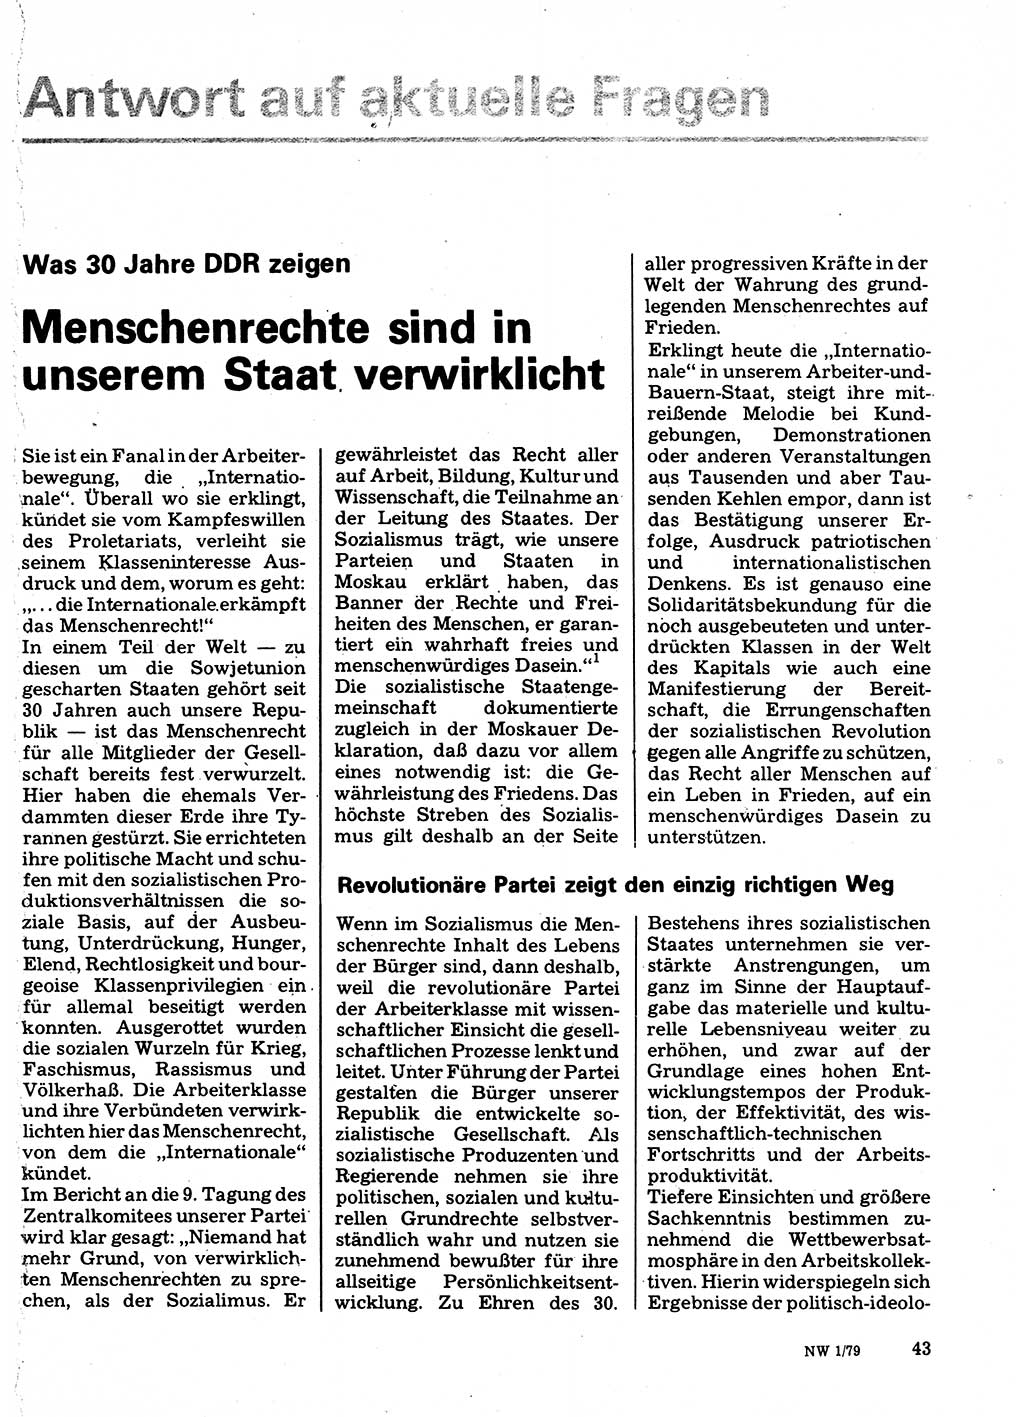 Neuer Weg (NW), Organ des Zentralkomitees (ZK) der SED (Sozialistische Einheitspartei Deutschlands) für Fragen des Parteilebens, 34. Jahrgang [Deutsche Demokratische Republik (DDR)] 1979, Seite 43 (NW ZK SED DDR 1979, S. 43)